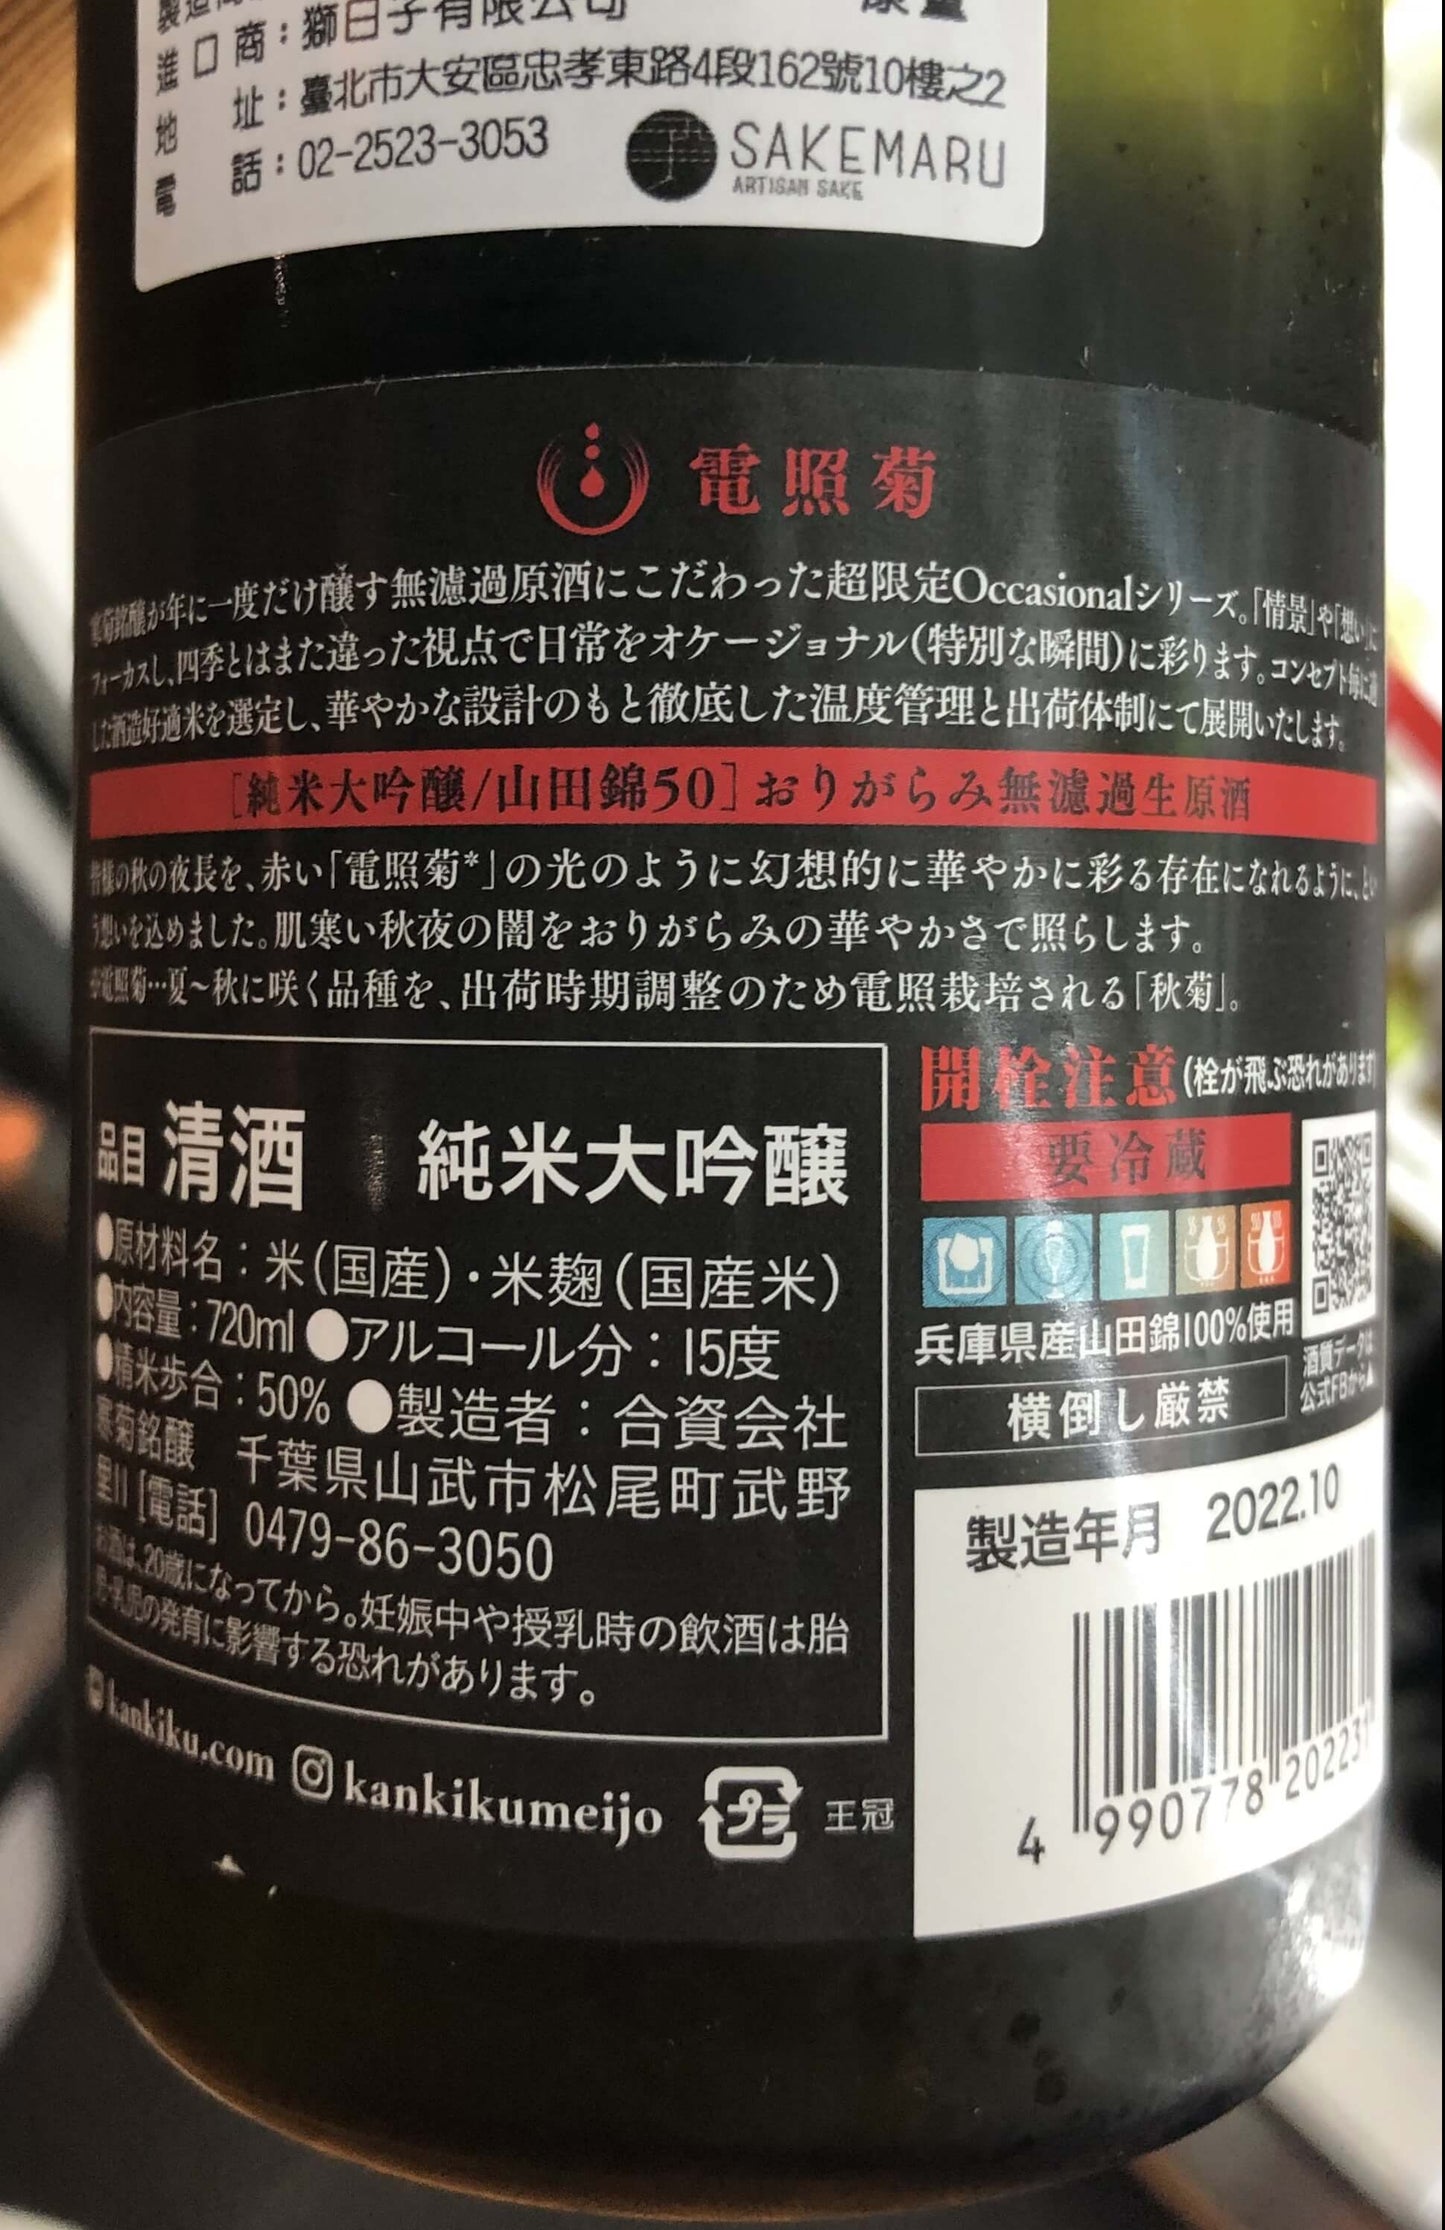 寒菊 電照菊(赤) 山田錦50 純米大吟醸 おりがらみ生原酒